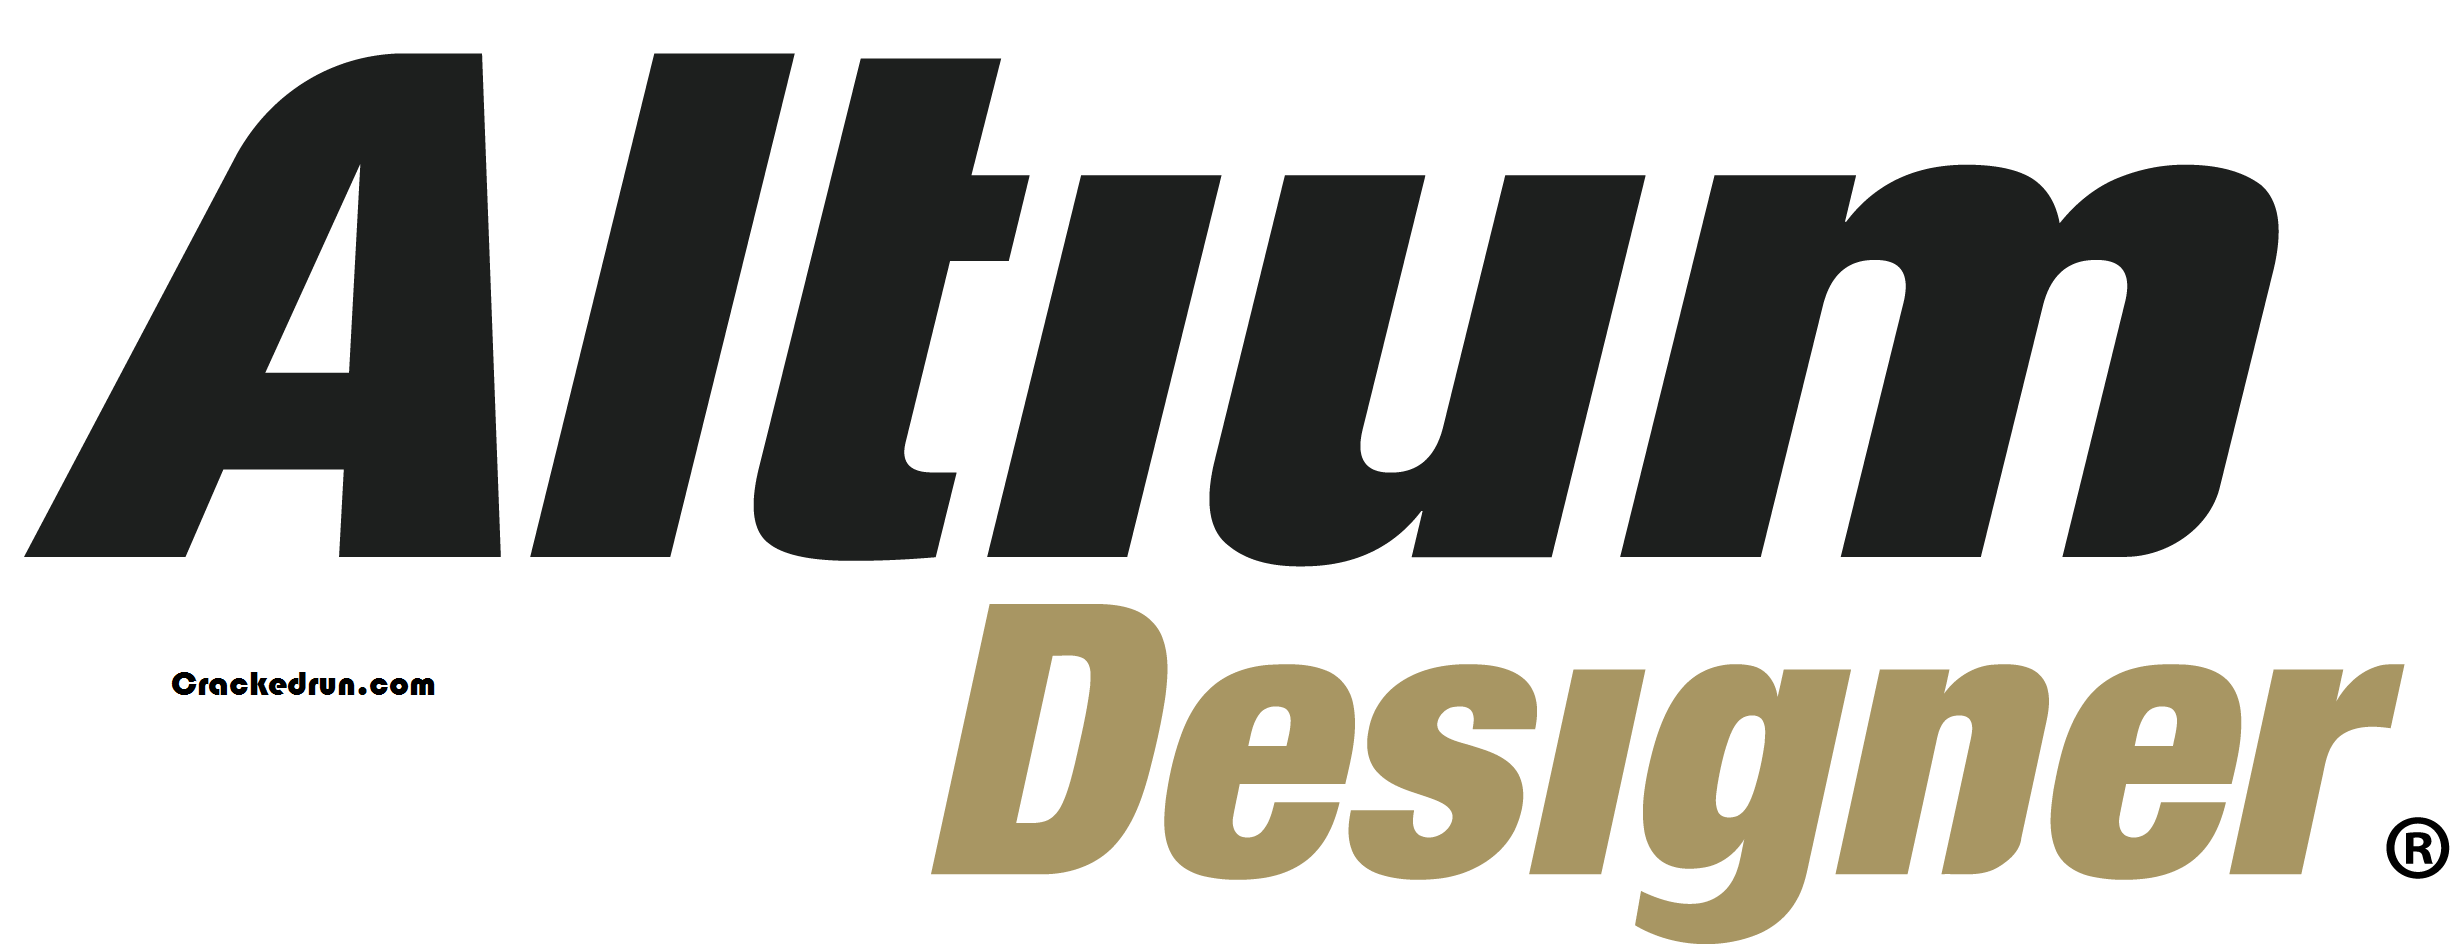 Altium Designer Crack 21 Plus Latest Free Download [2021]